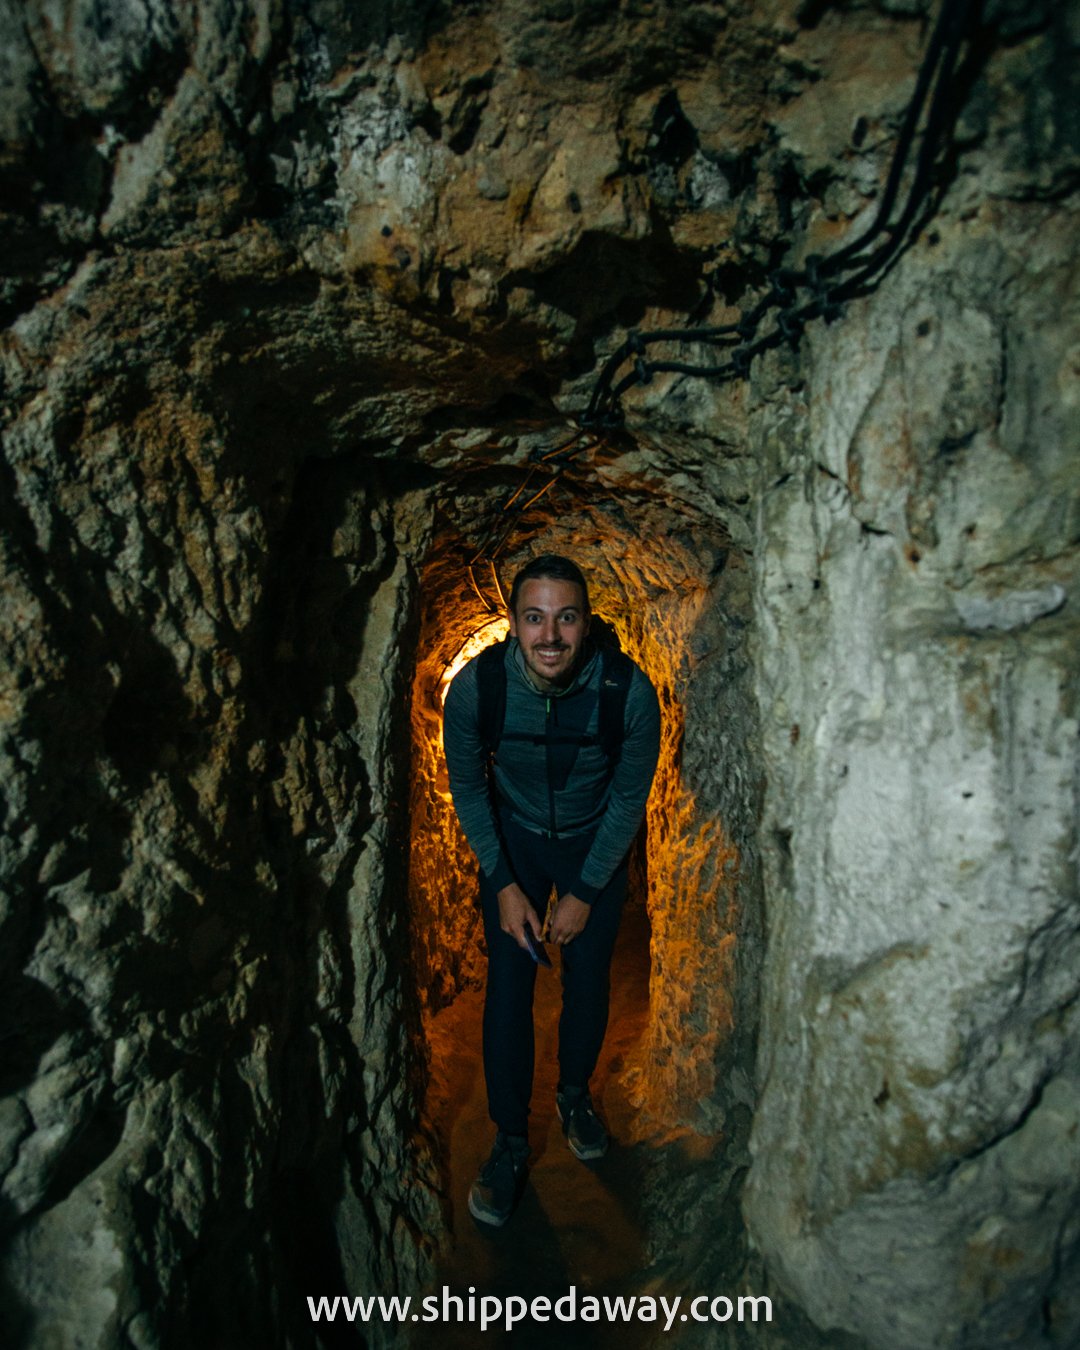 Matej Špan bent down, crouching through tunnels of Derinkuyu Underground City